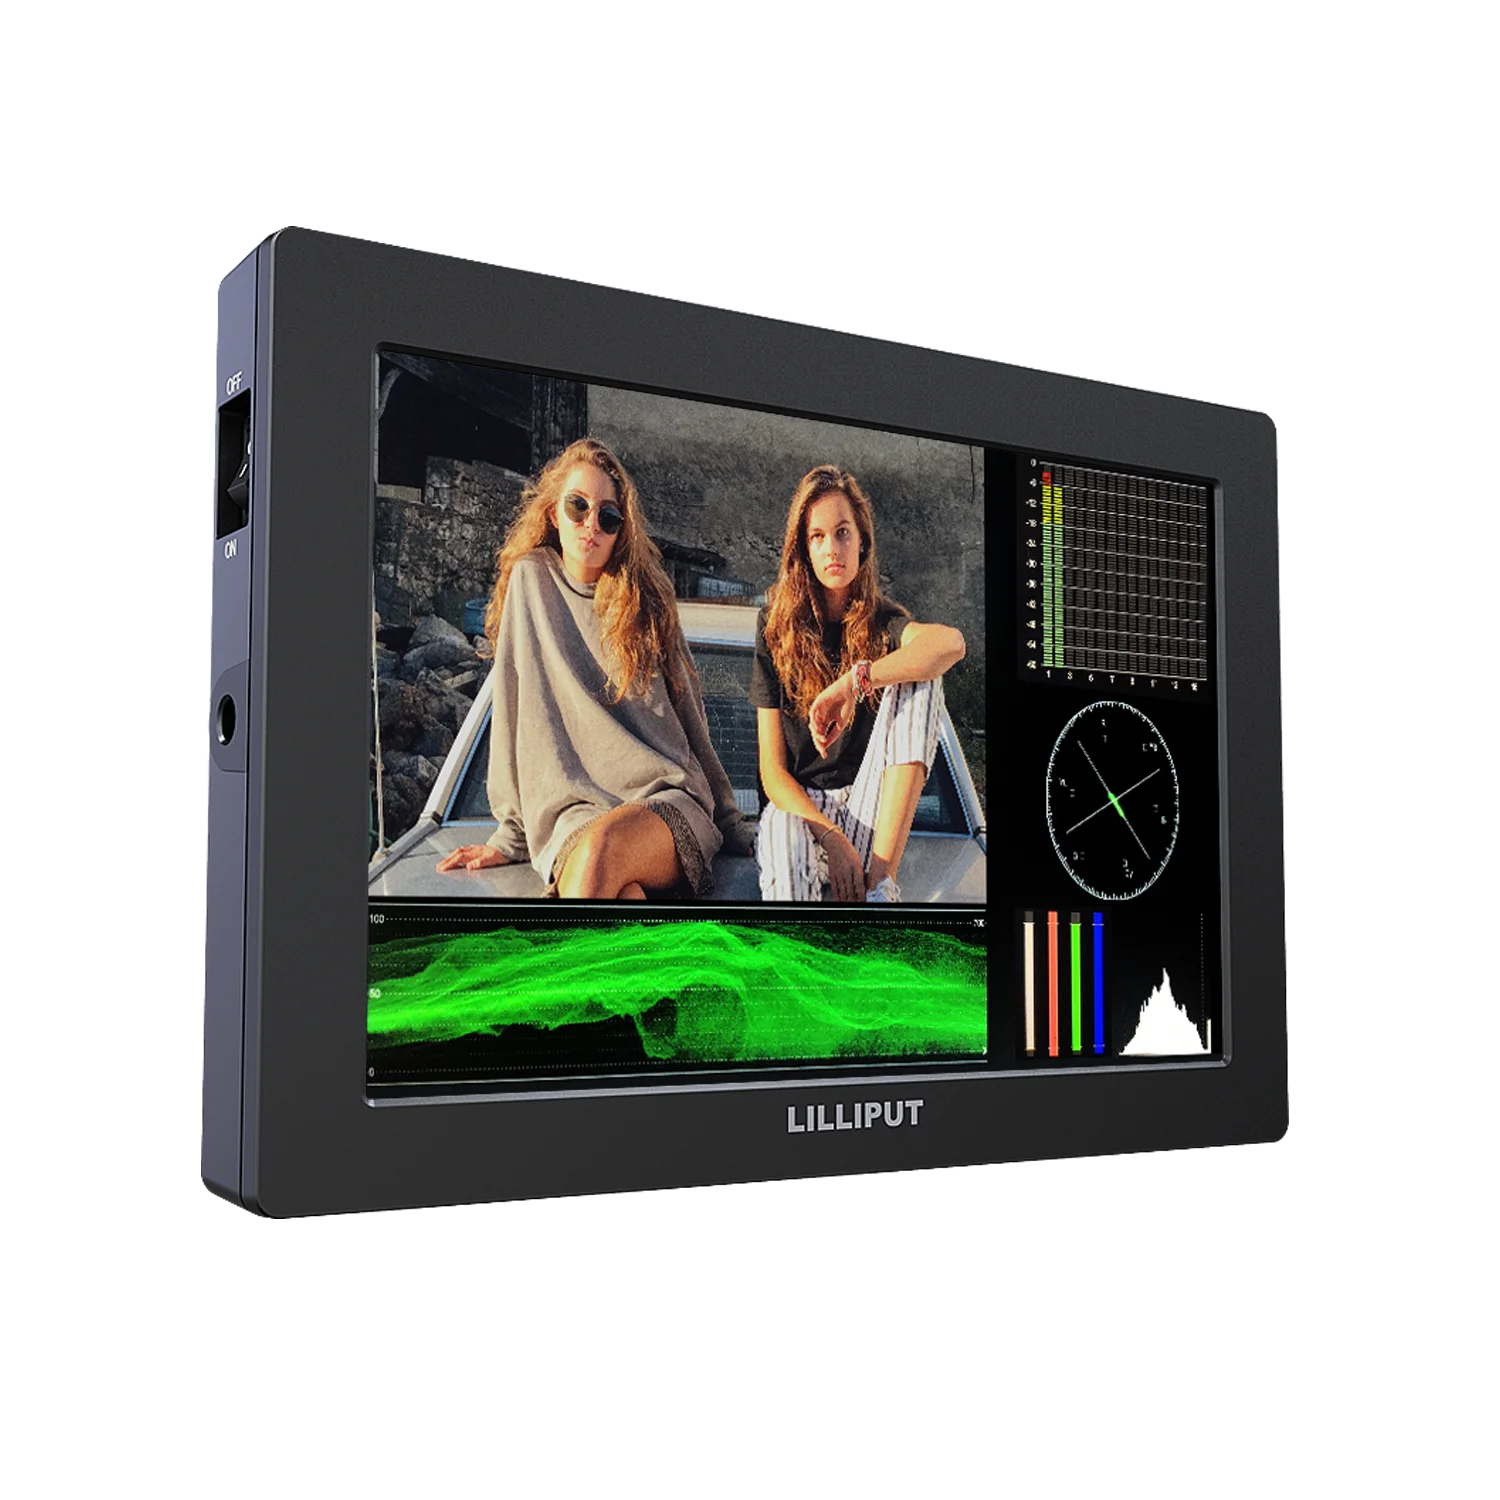 Lilliput 7インチfull Hd Dslr Lcd Monitor With 3g Sdi 4k Hdmi Input 19 10解像度金属フレームカメラ支援機能 Buy 7 インチモニター Hd モニター カメラモニター Product On Alibaba Com